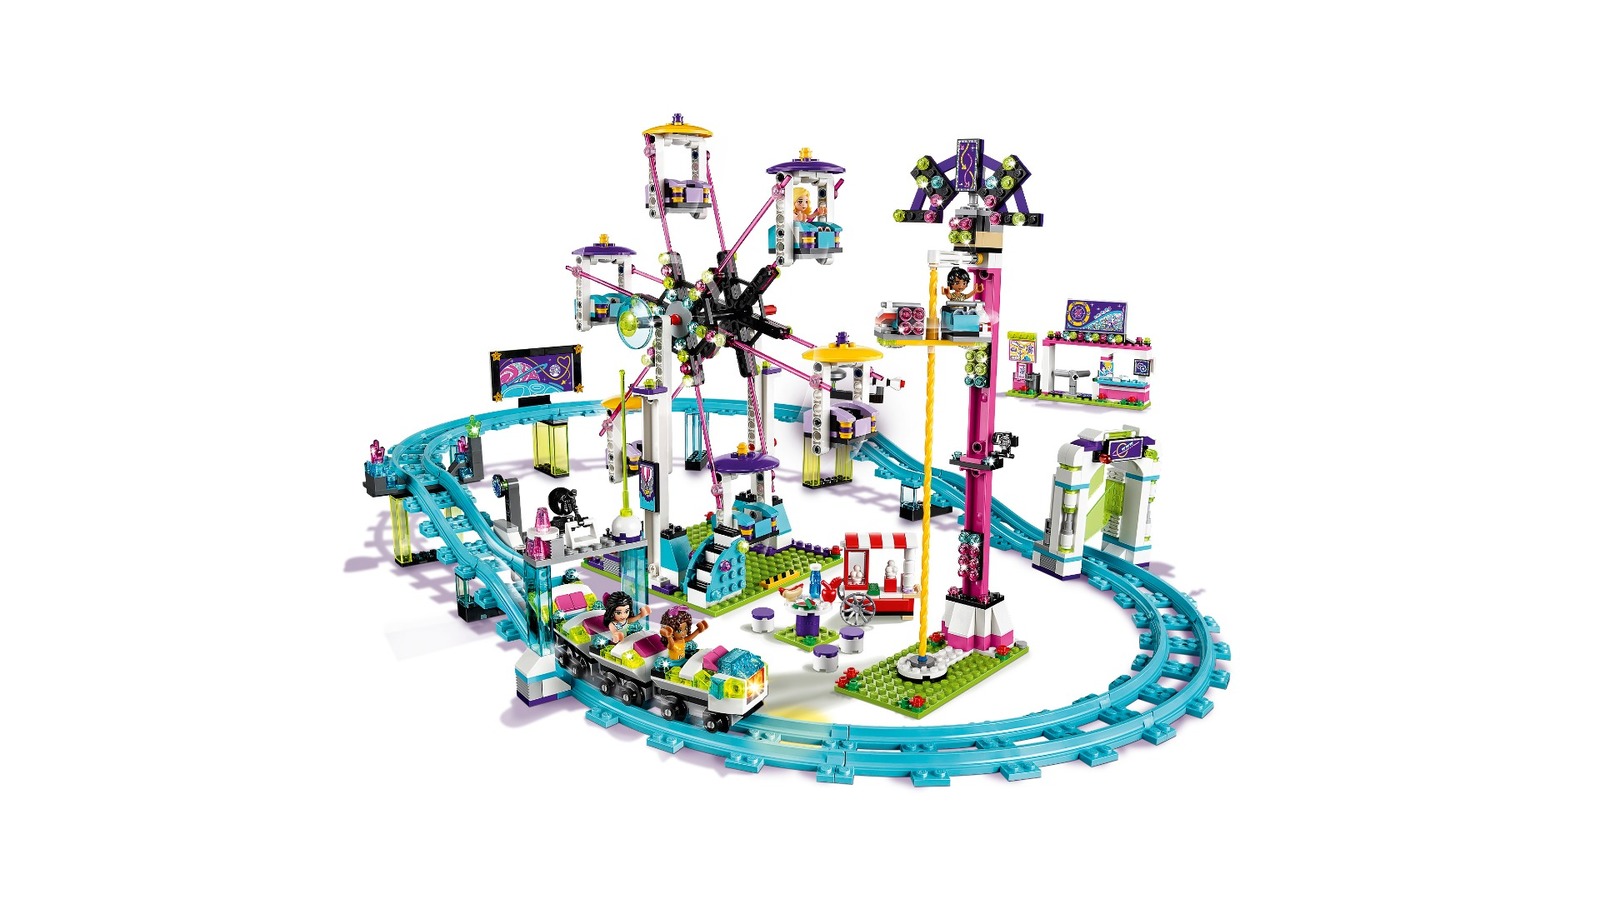 Matt's LEGO Roller Coaster